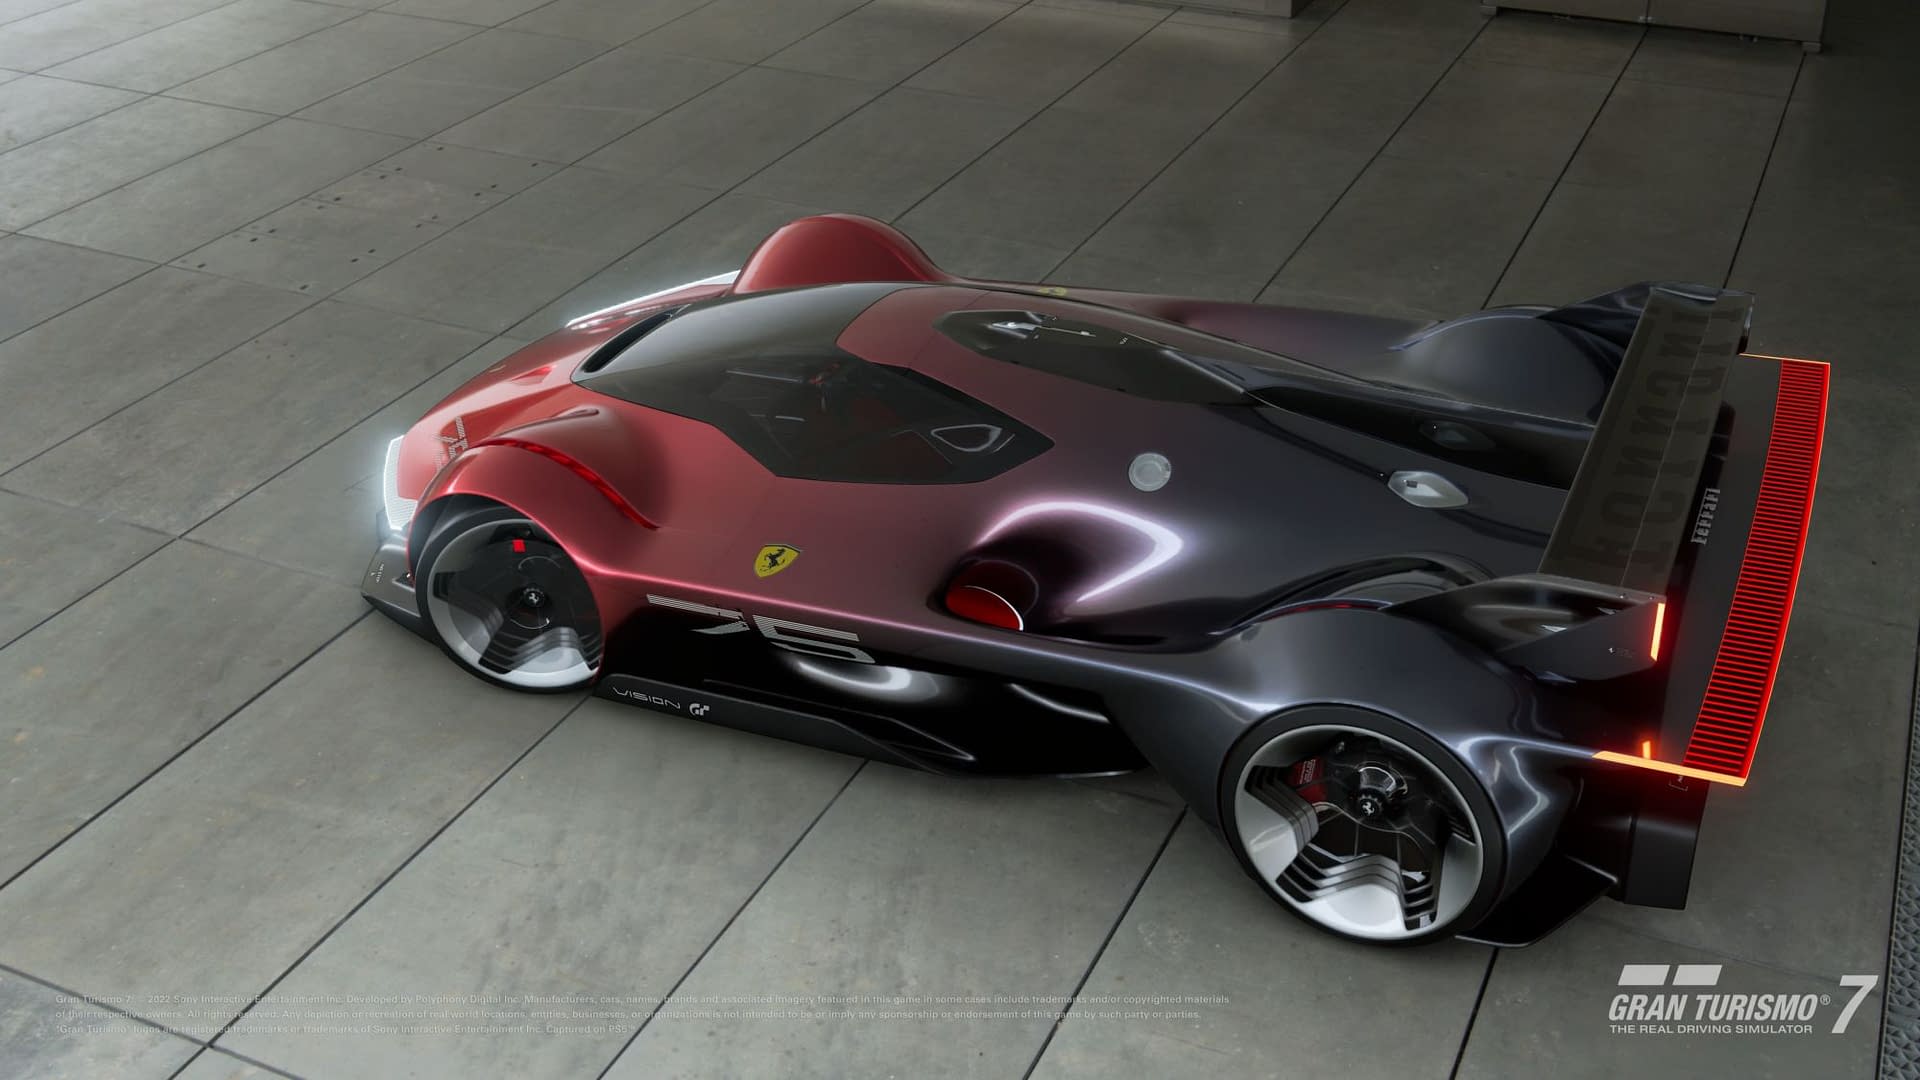 Ferrari Unveils It's First Digital Design: Vision Gran Turismo